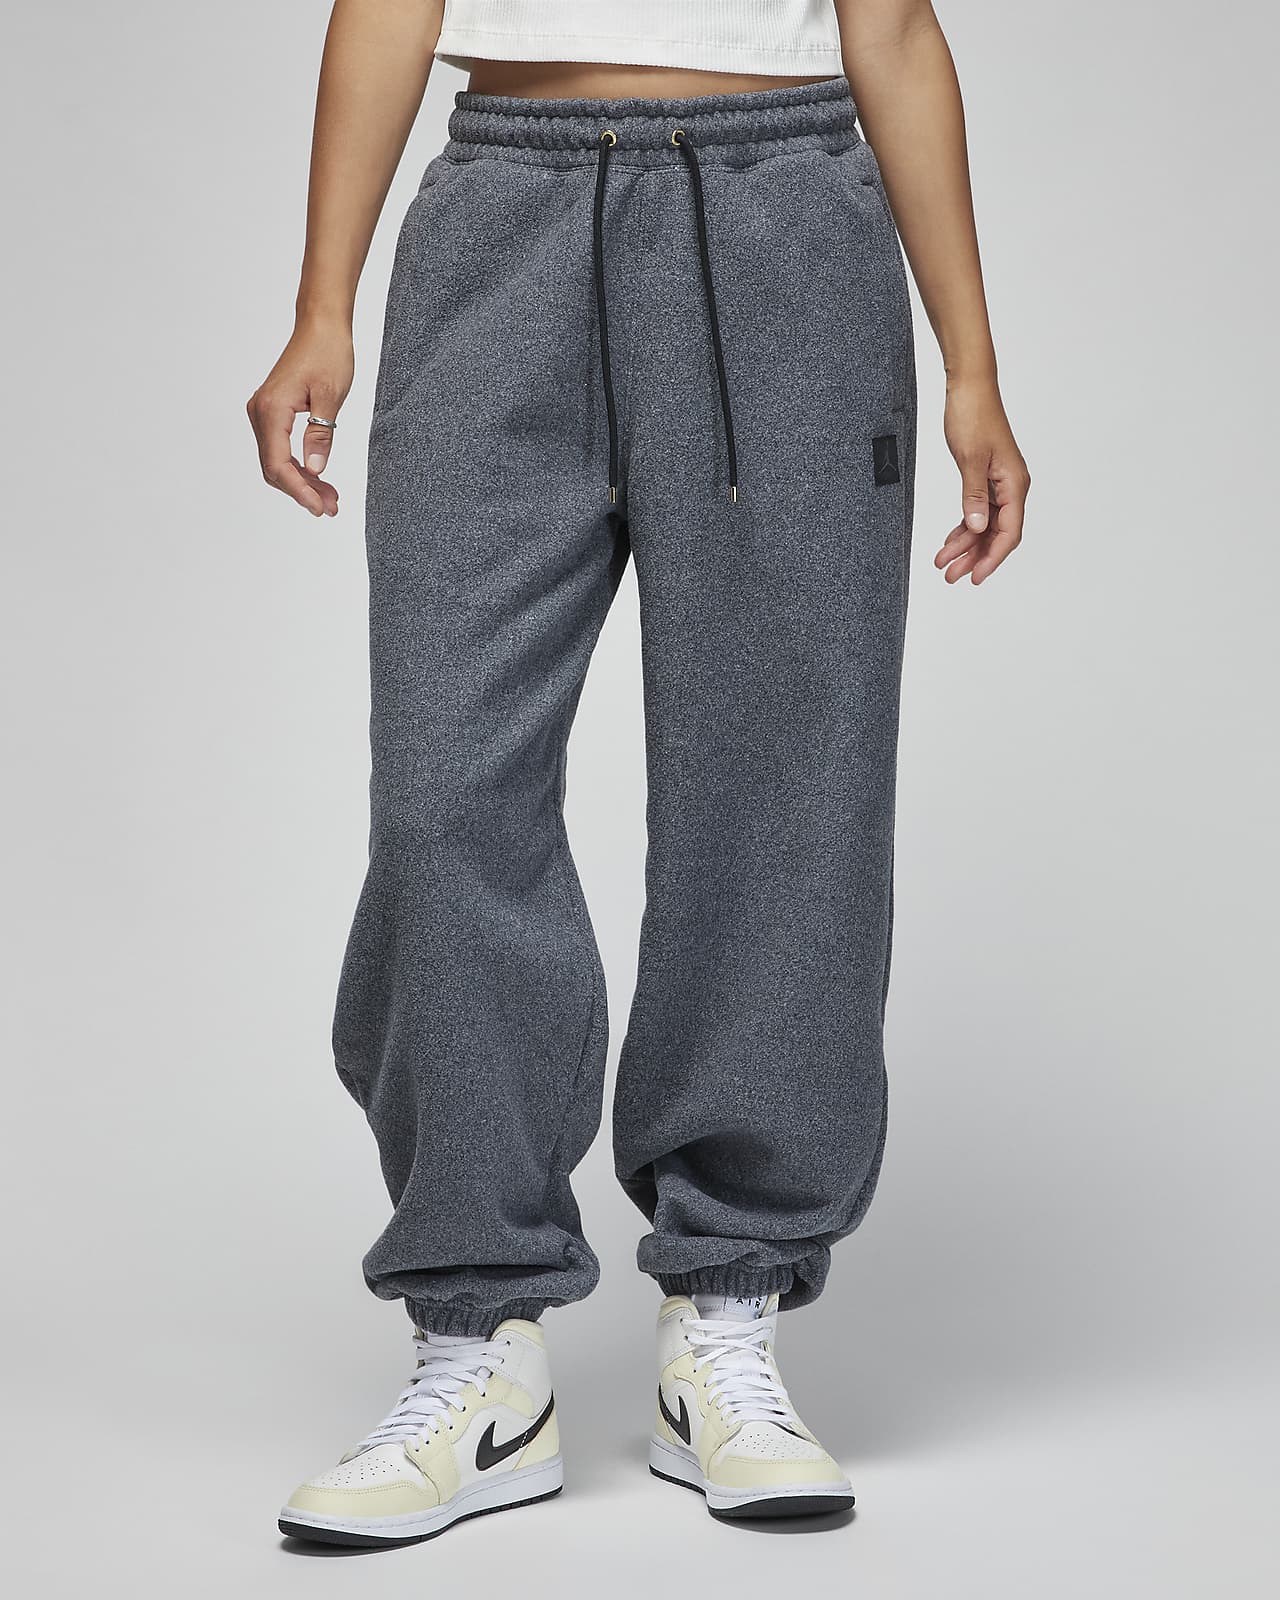 Mujer Frío Pants y tights. Nike US